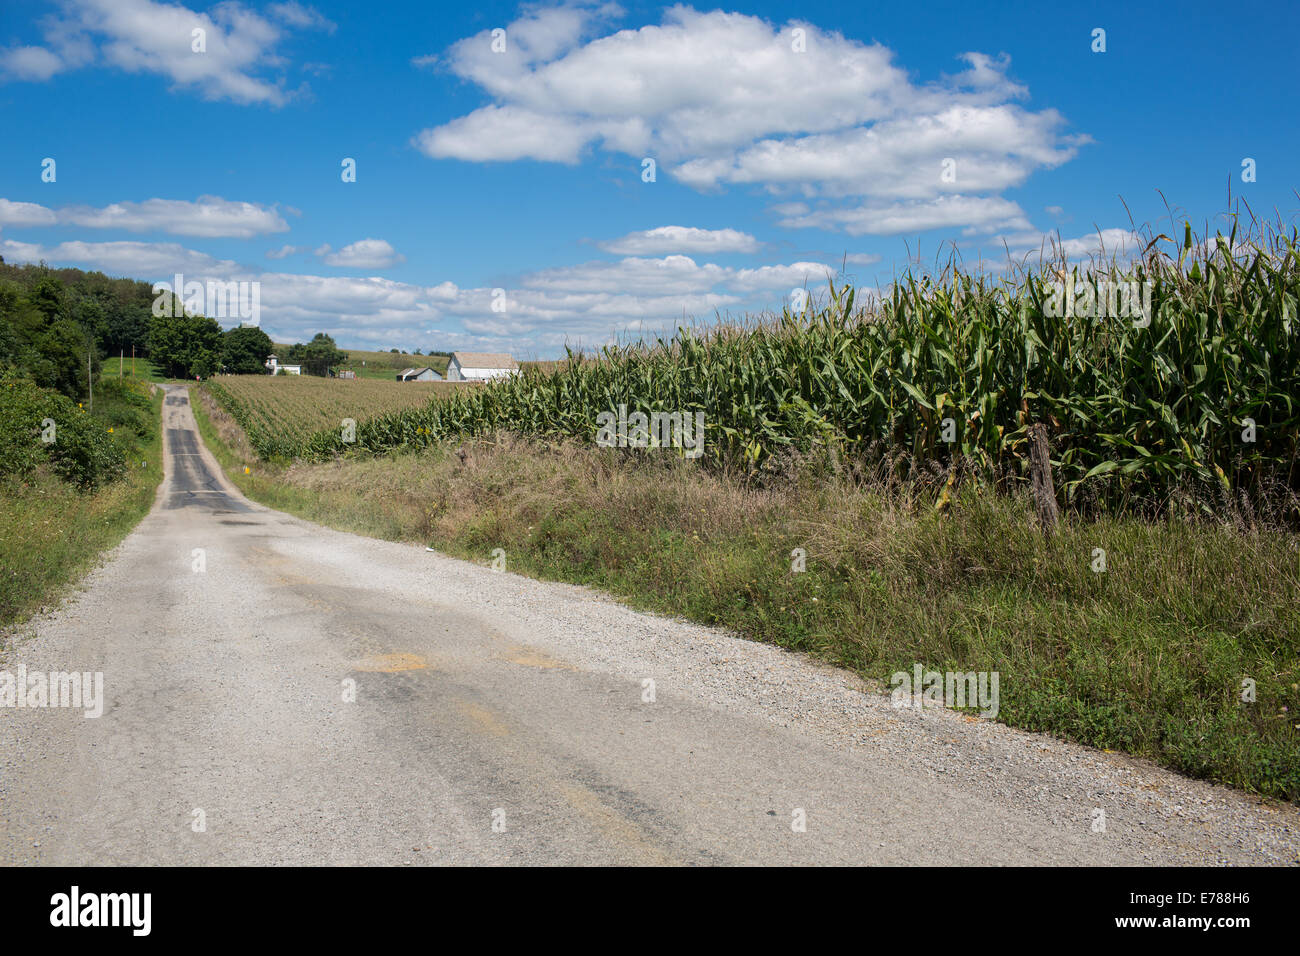 A Corn Field located in Rural Ohio Stock Photo